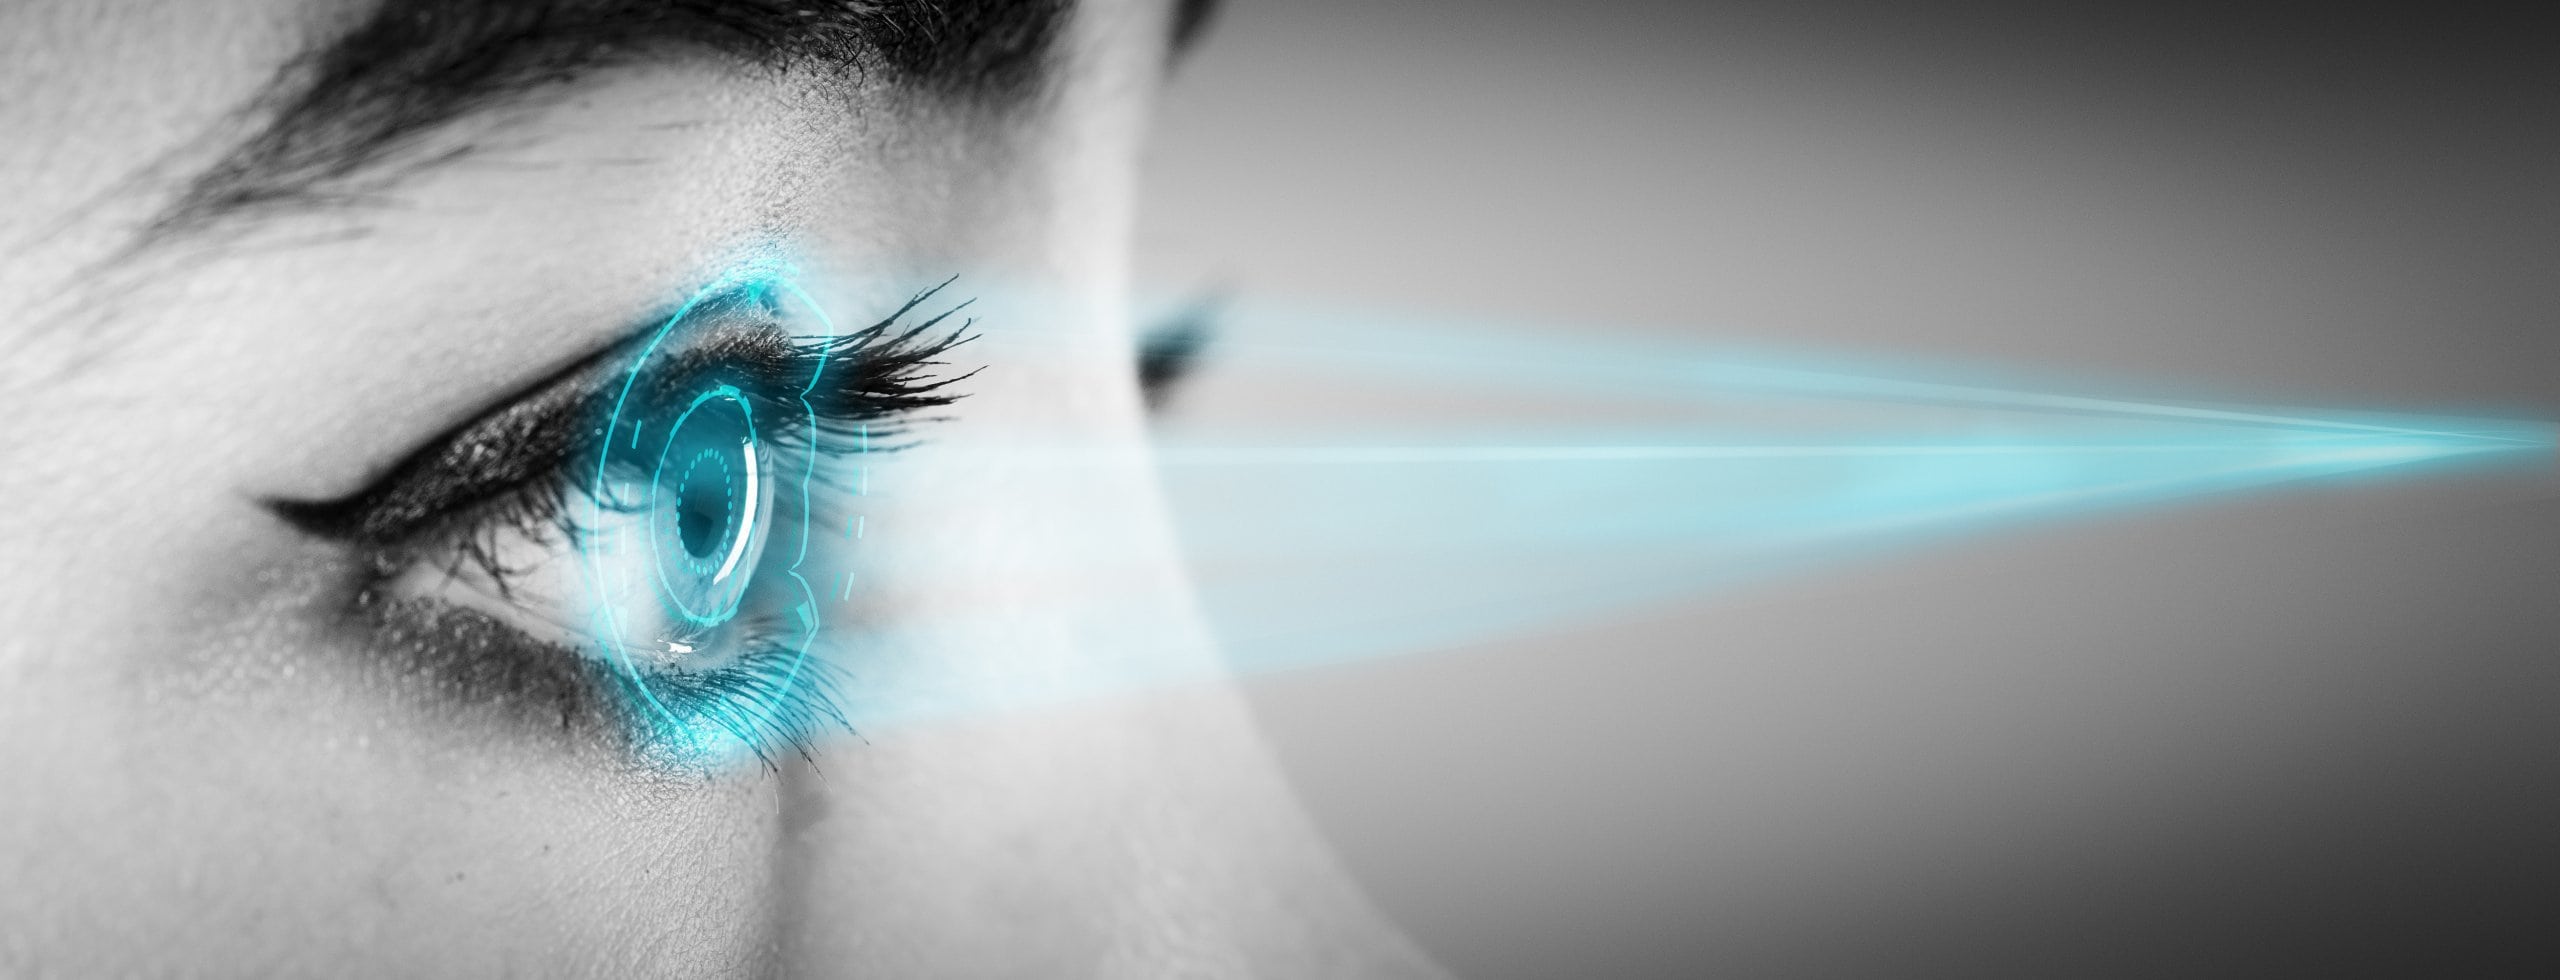 Blaues Licht: Schädlich für Augen und Haut?